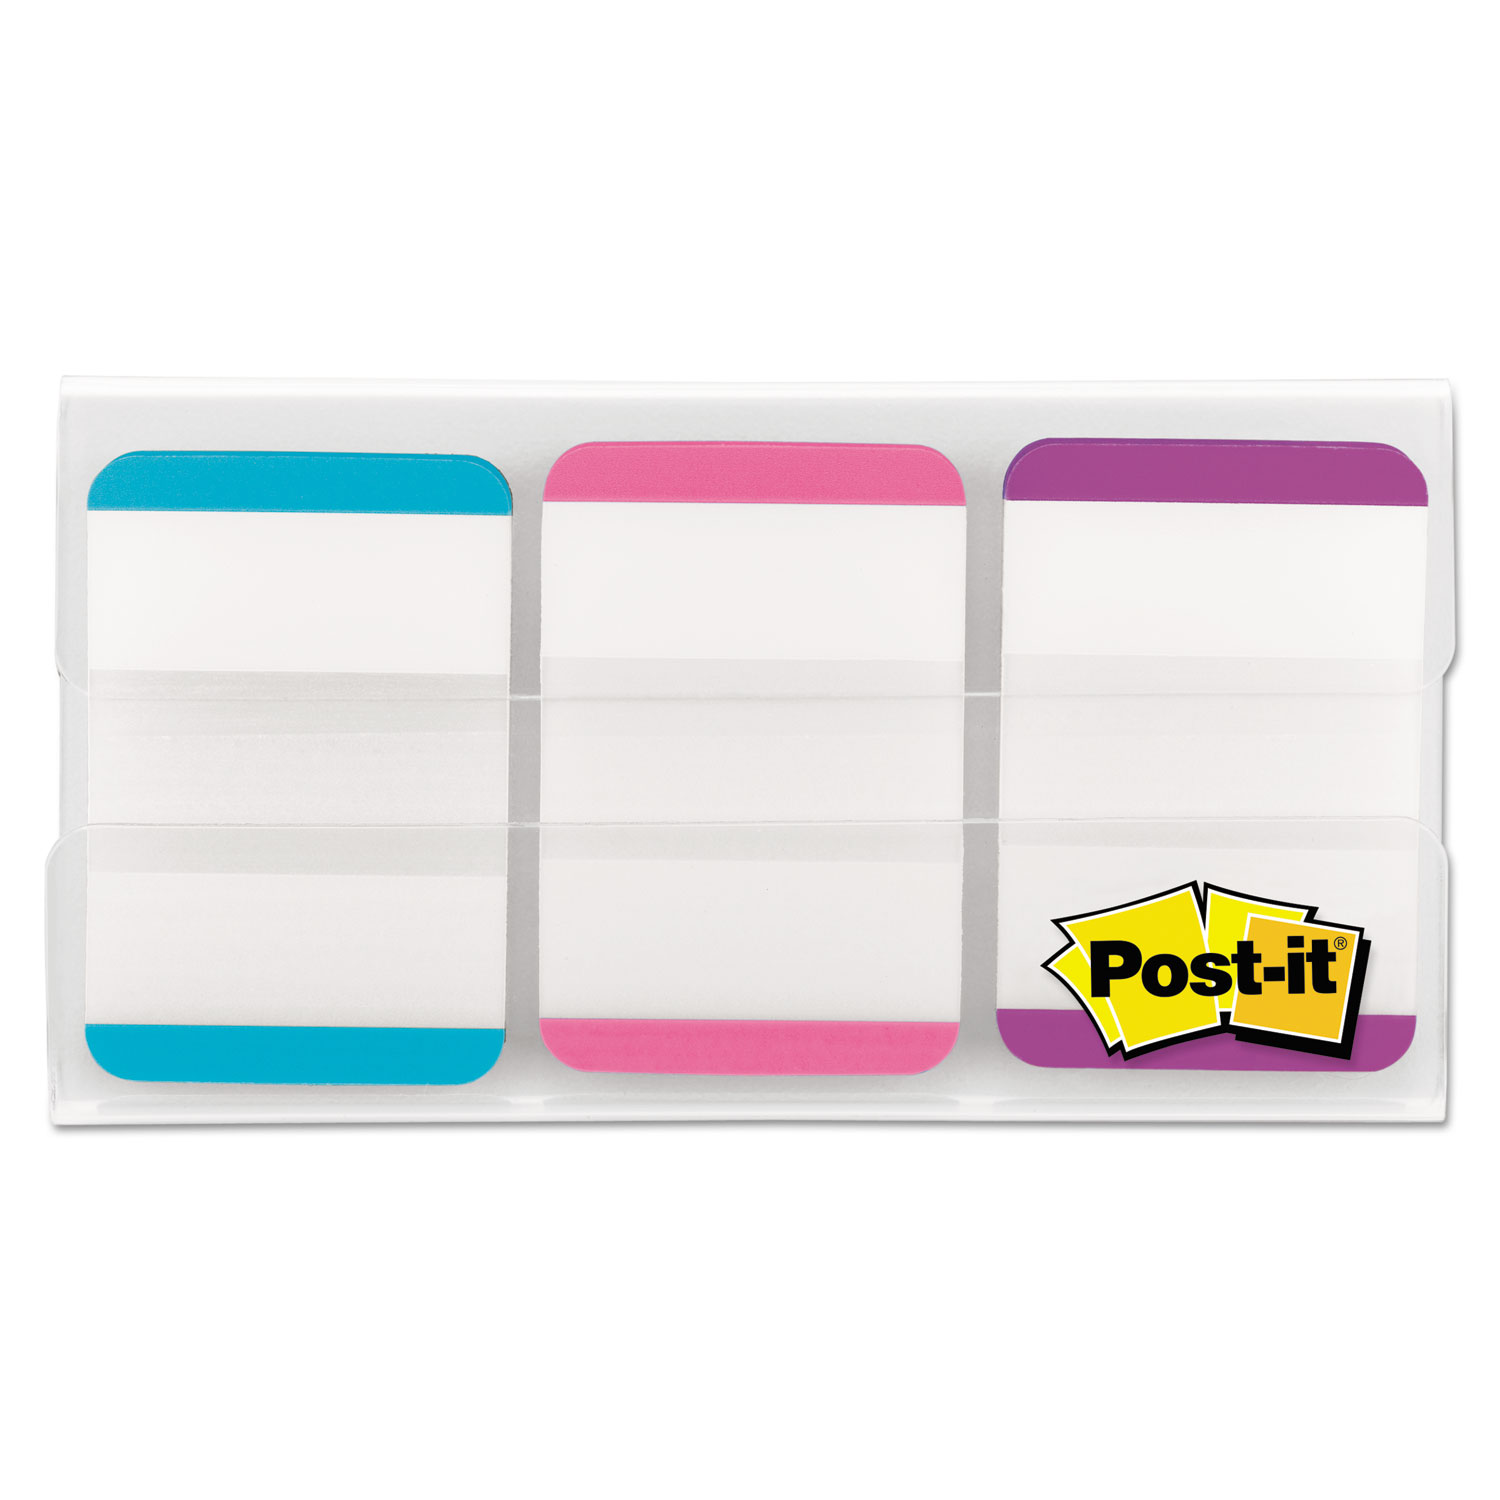  Post-it Tabs 686L-APV 1 Tabs, 1/5-Cut Tabs, Lined, Assorted Pastels, 1 Wide, 66/Pack (MMM686LAPV) 